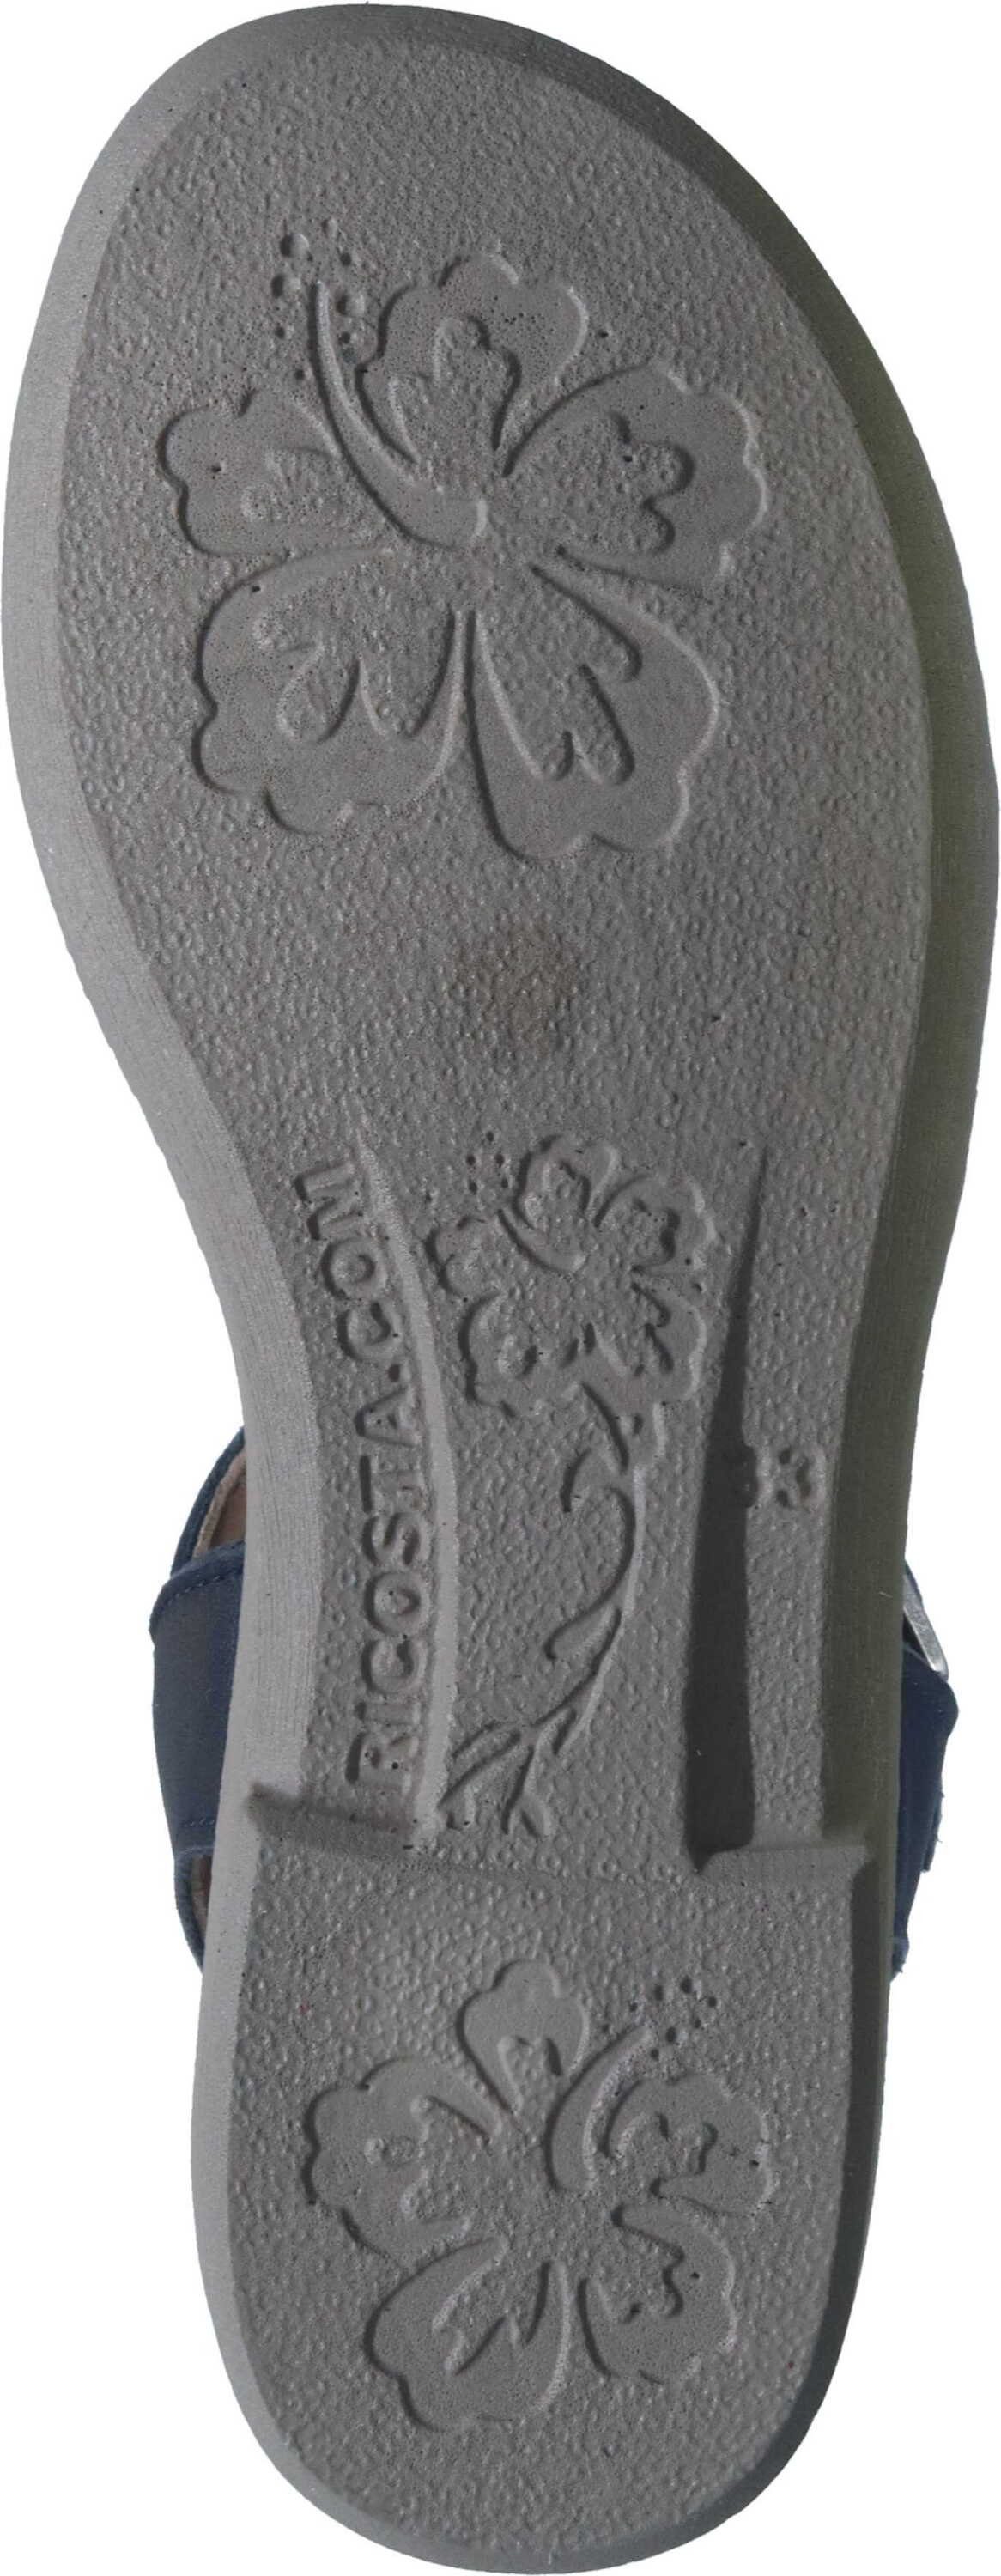 Ricosta Leder Sandaletten echtem blau Outdoorsandale aus